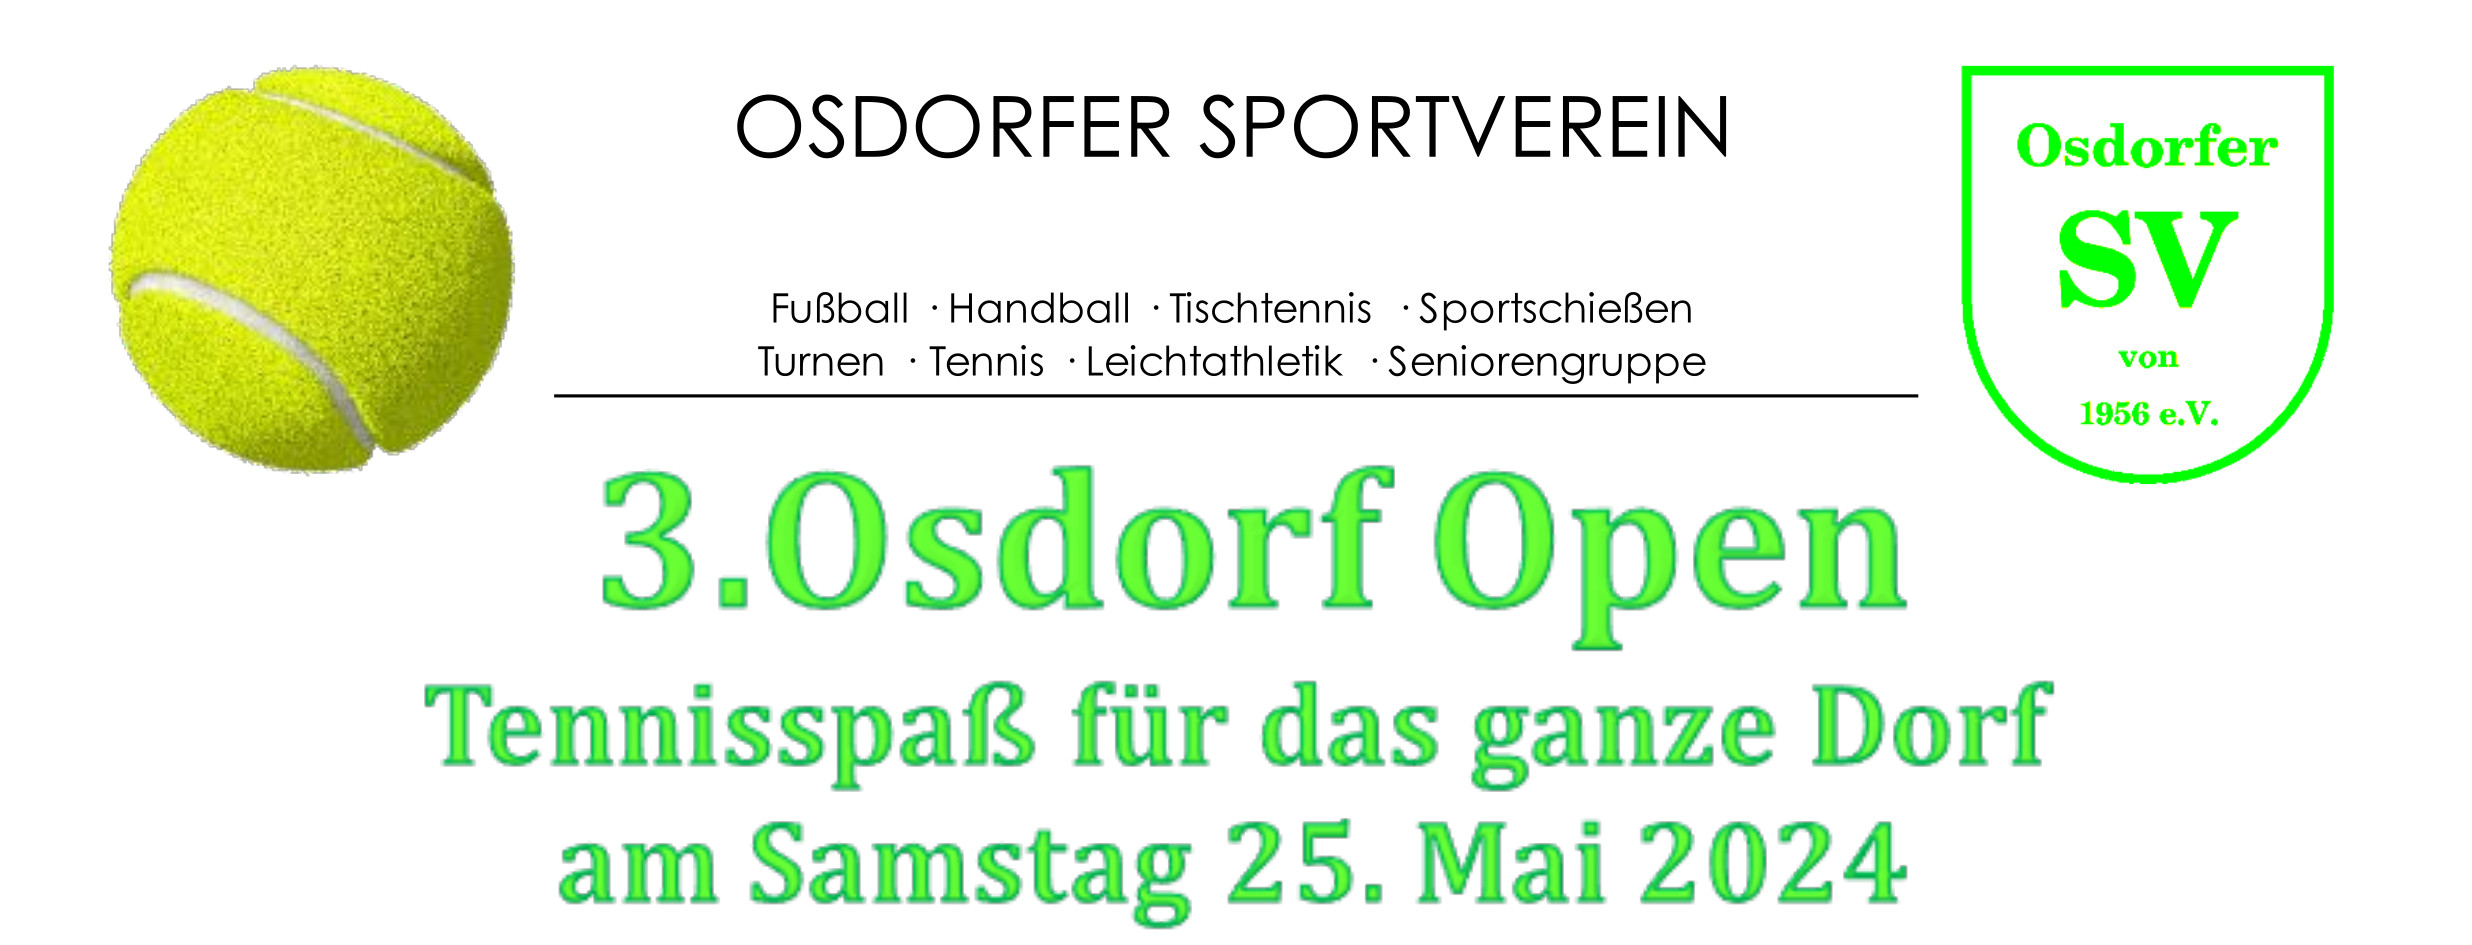 Jetzt Anmelden: Osdorf Tennis Open am Samstag 25.05.2024!